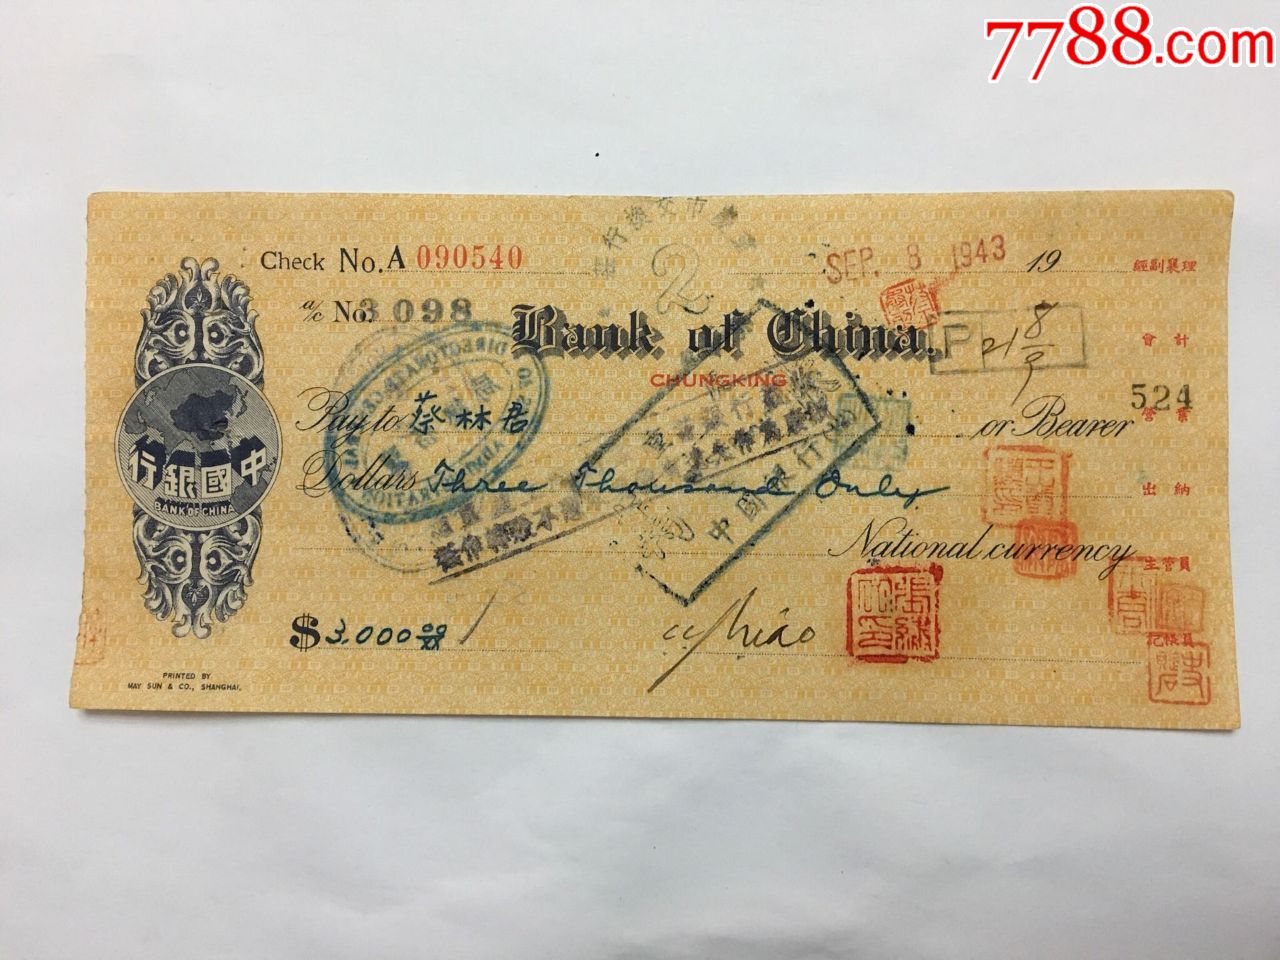 1943年中国银行英文版盐业票据,盐务总局背书